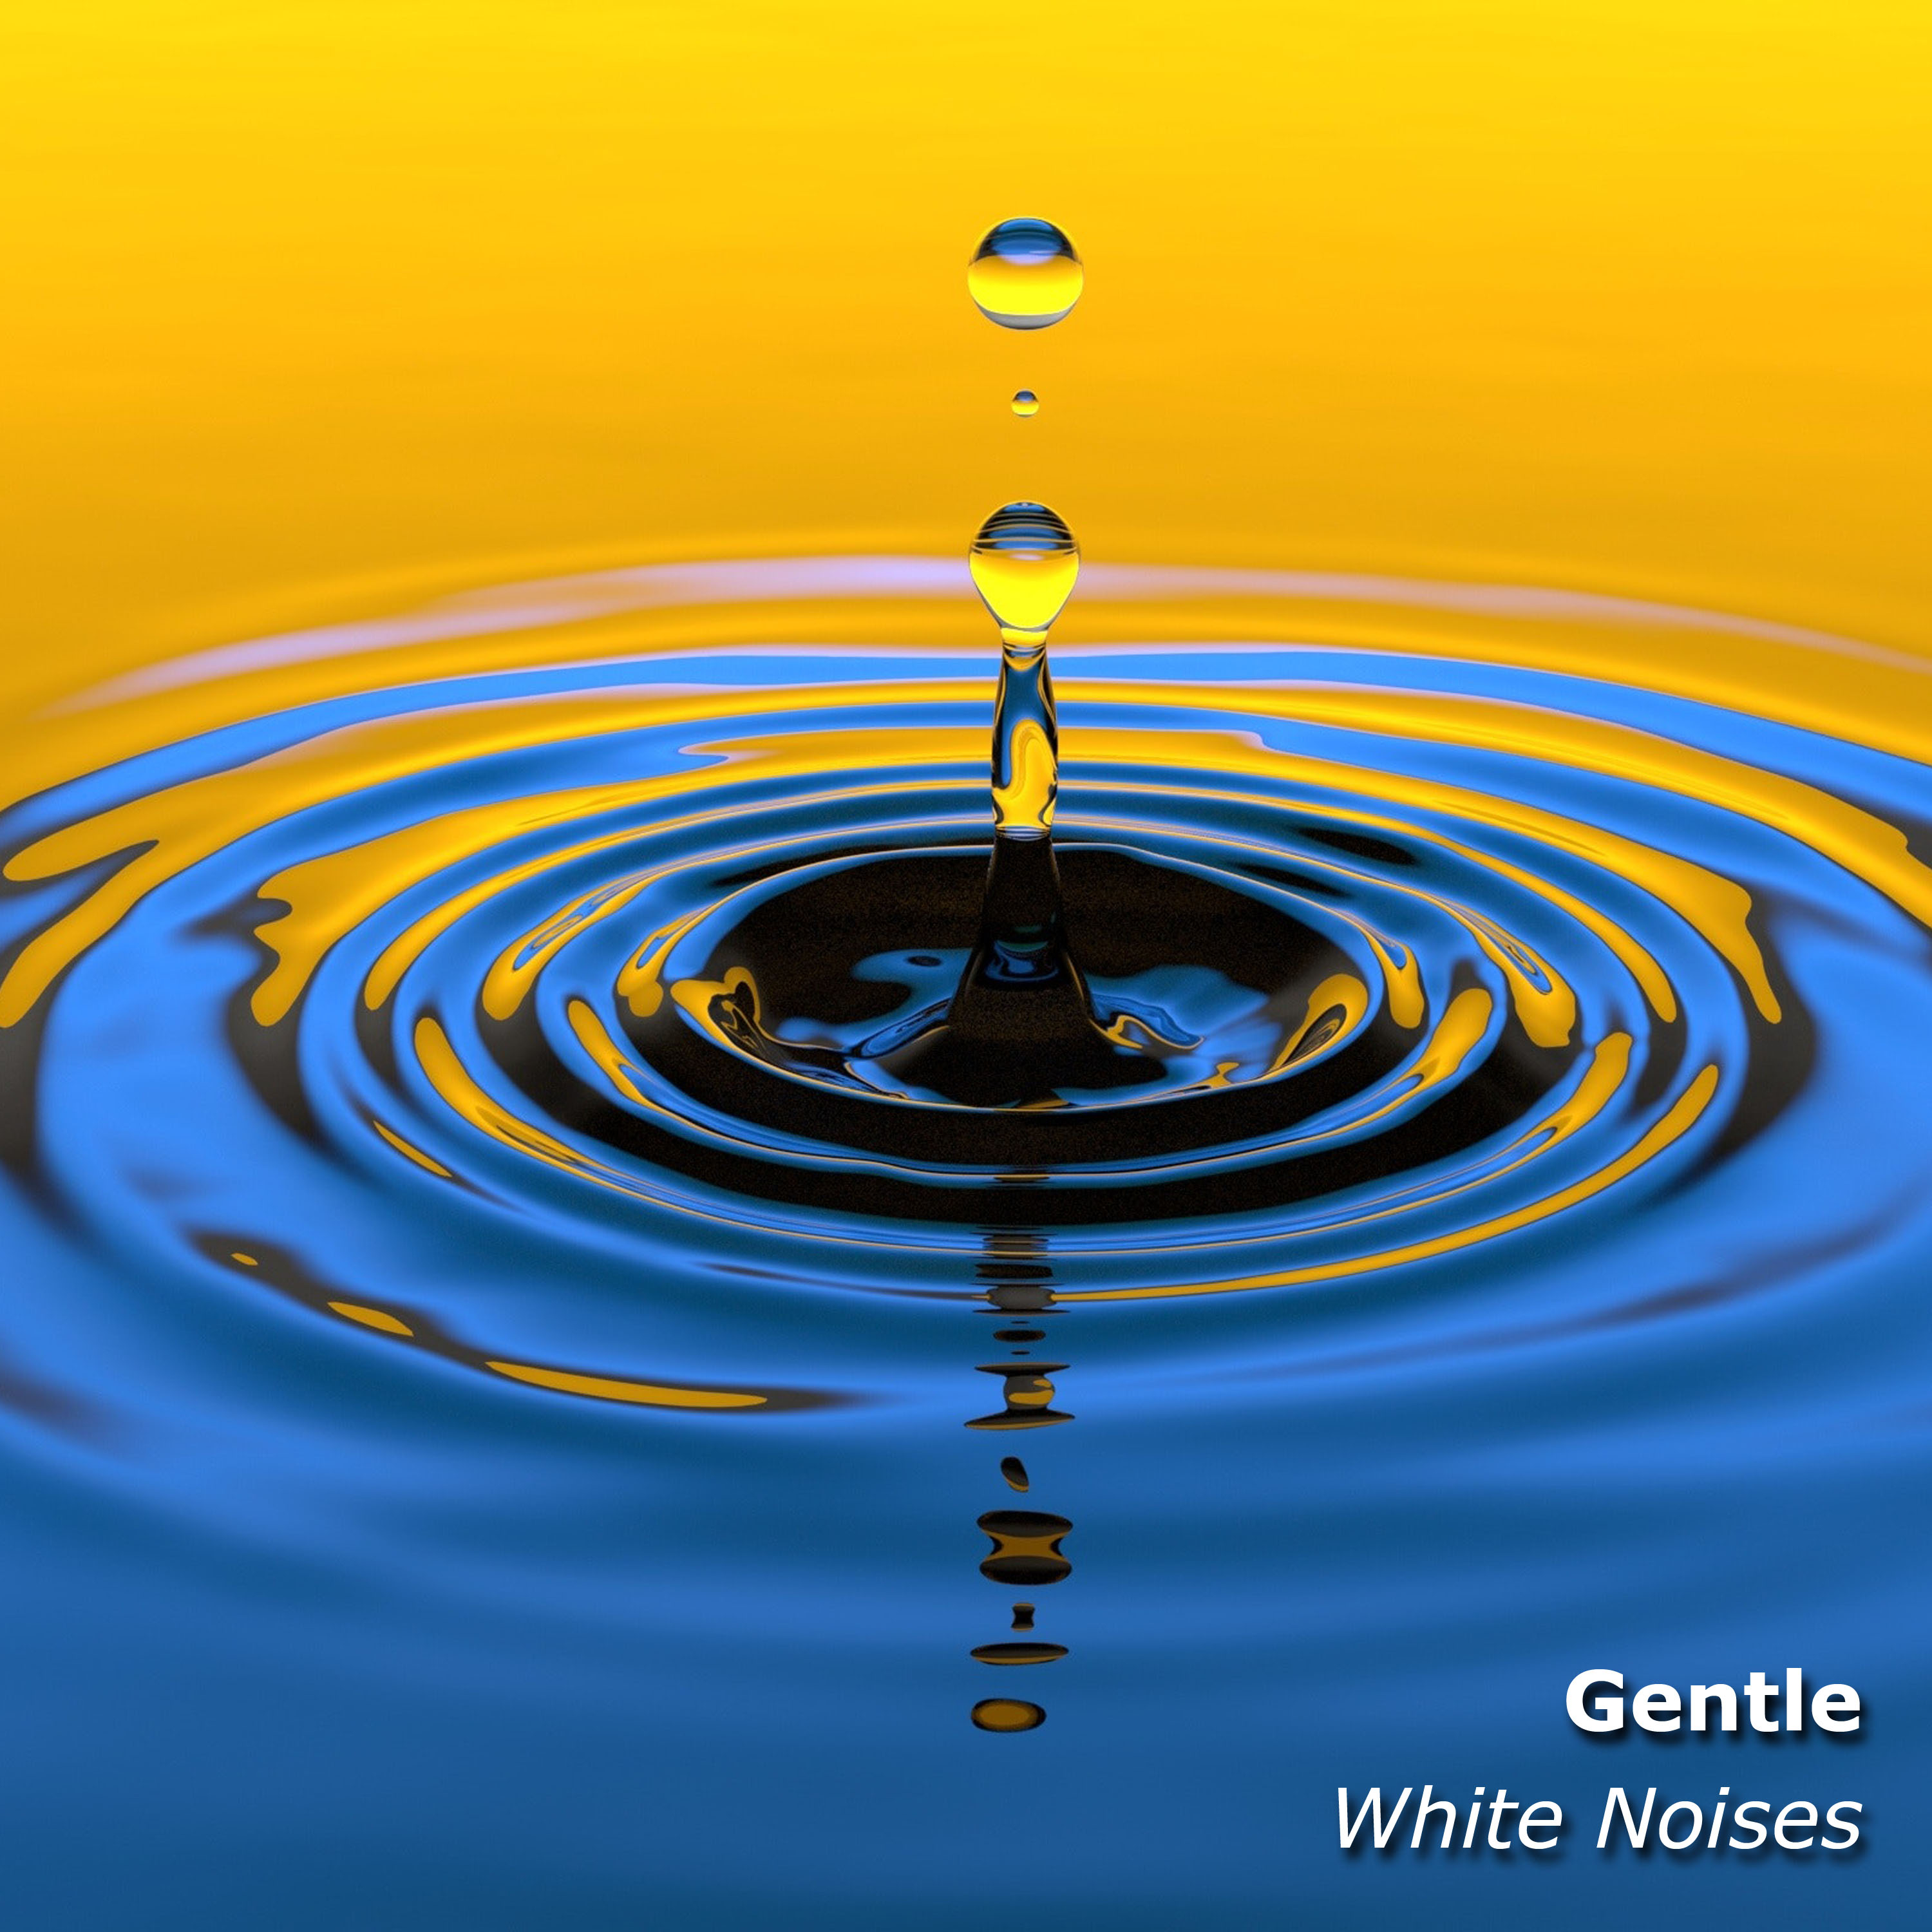 16 Gentle White Noises